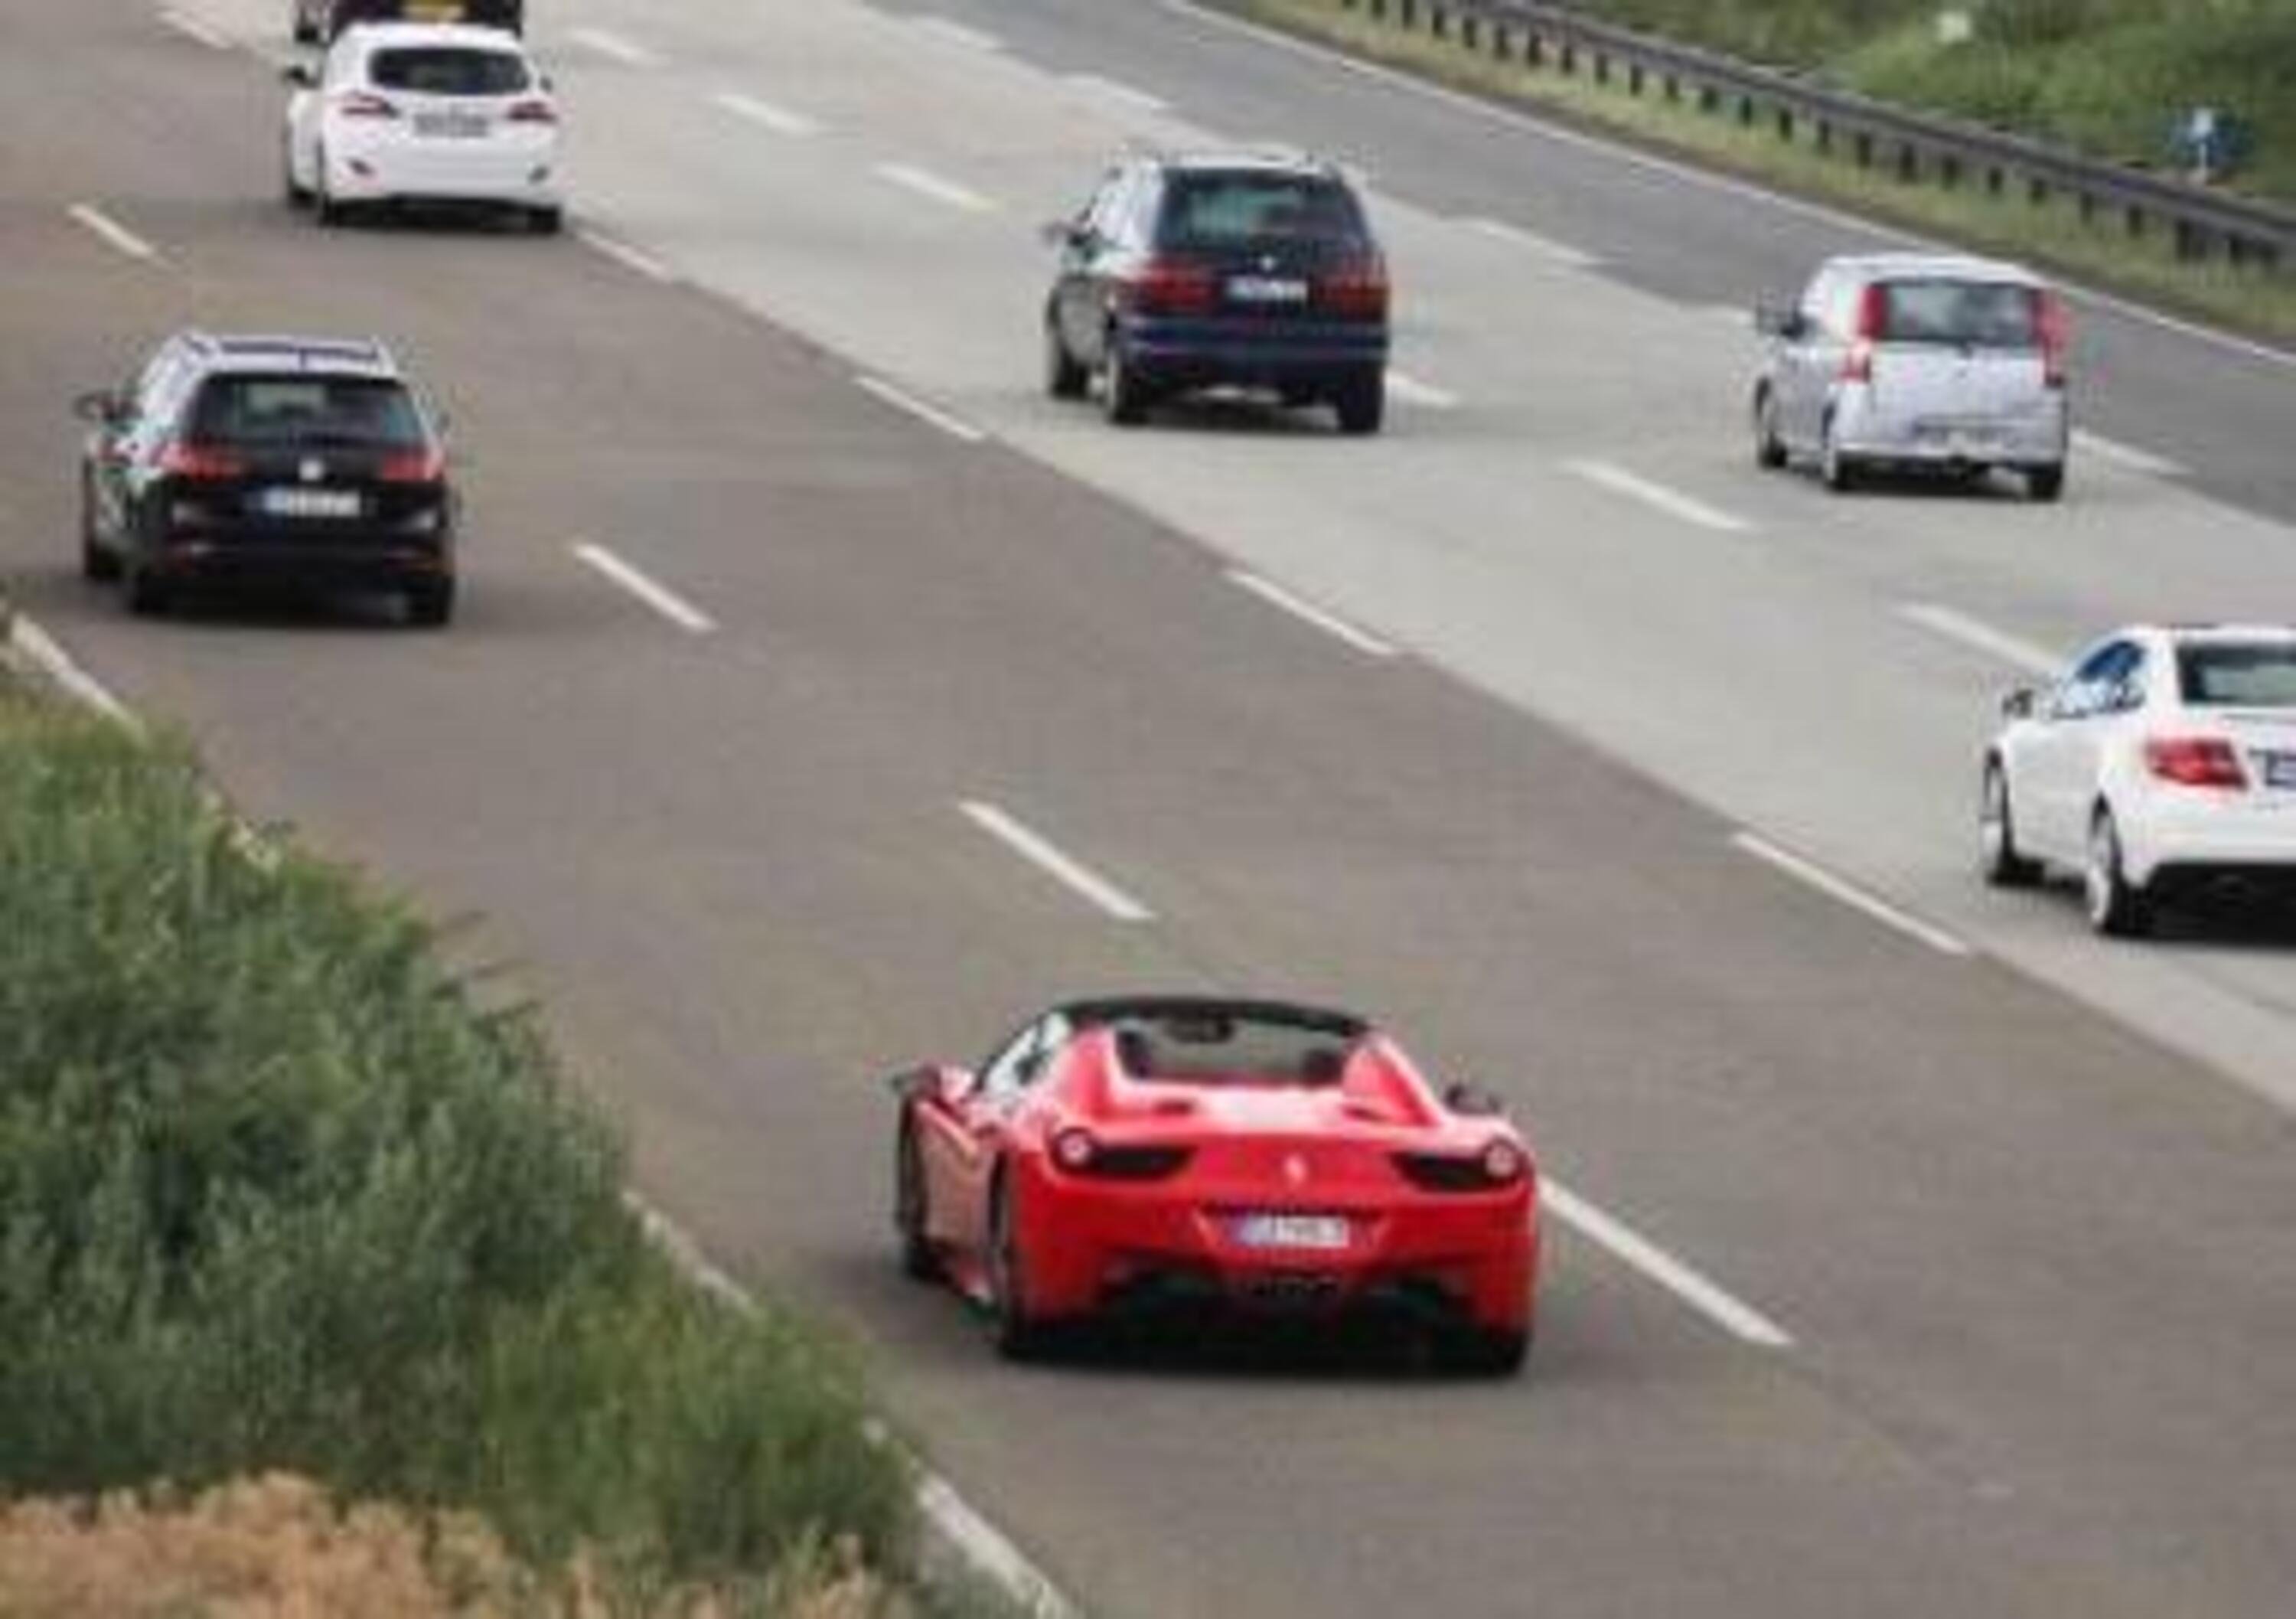 Ferrari a noleggio e scommesse online con il reddito di cittadinanza: indagato un professionista bresciano